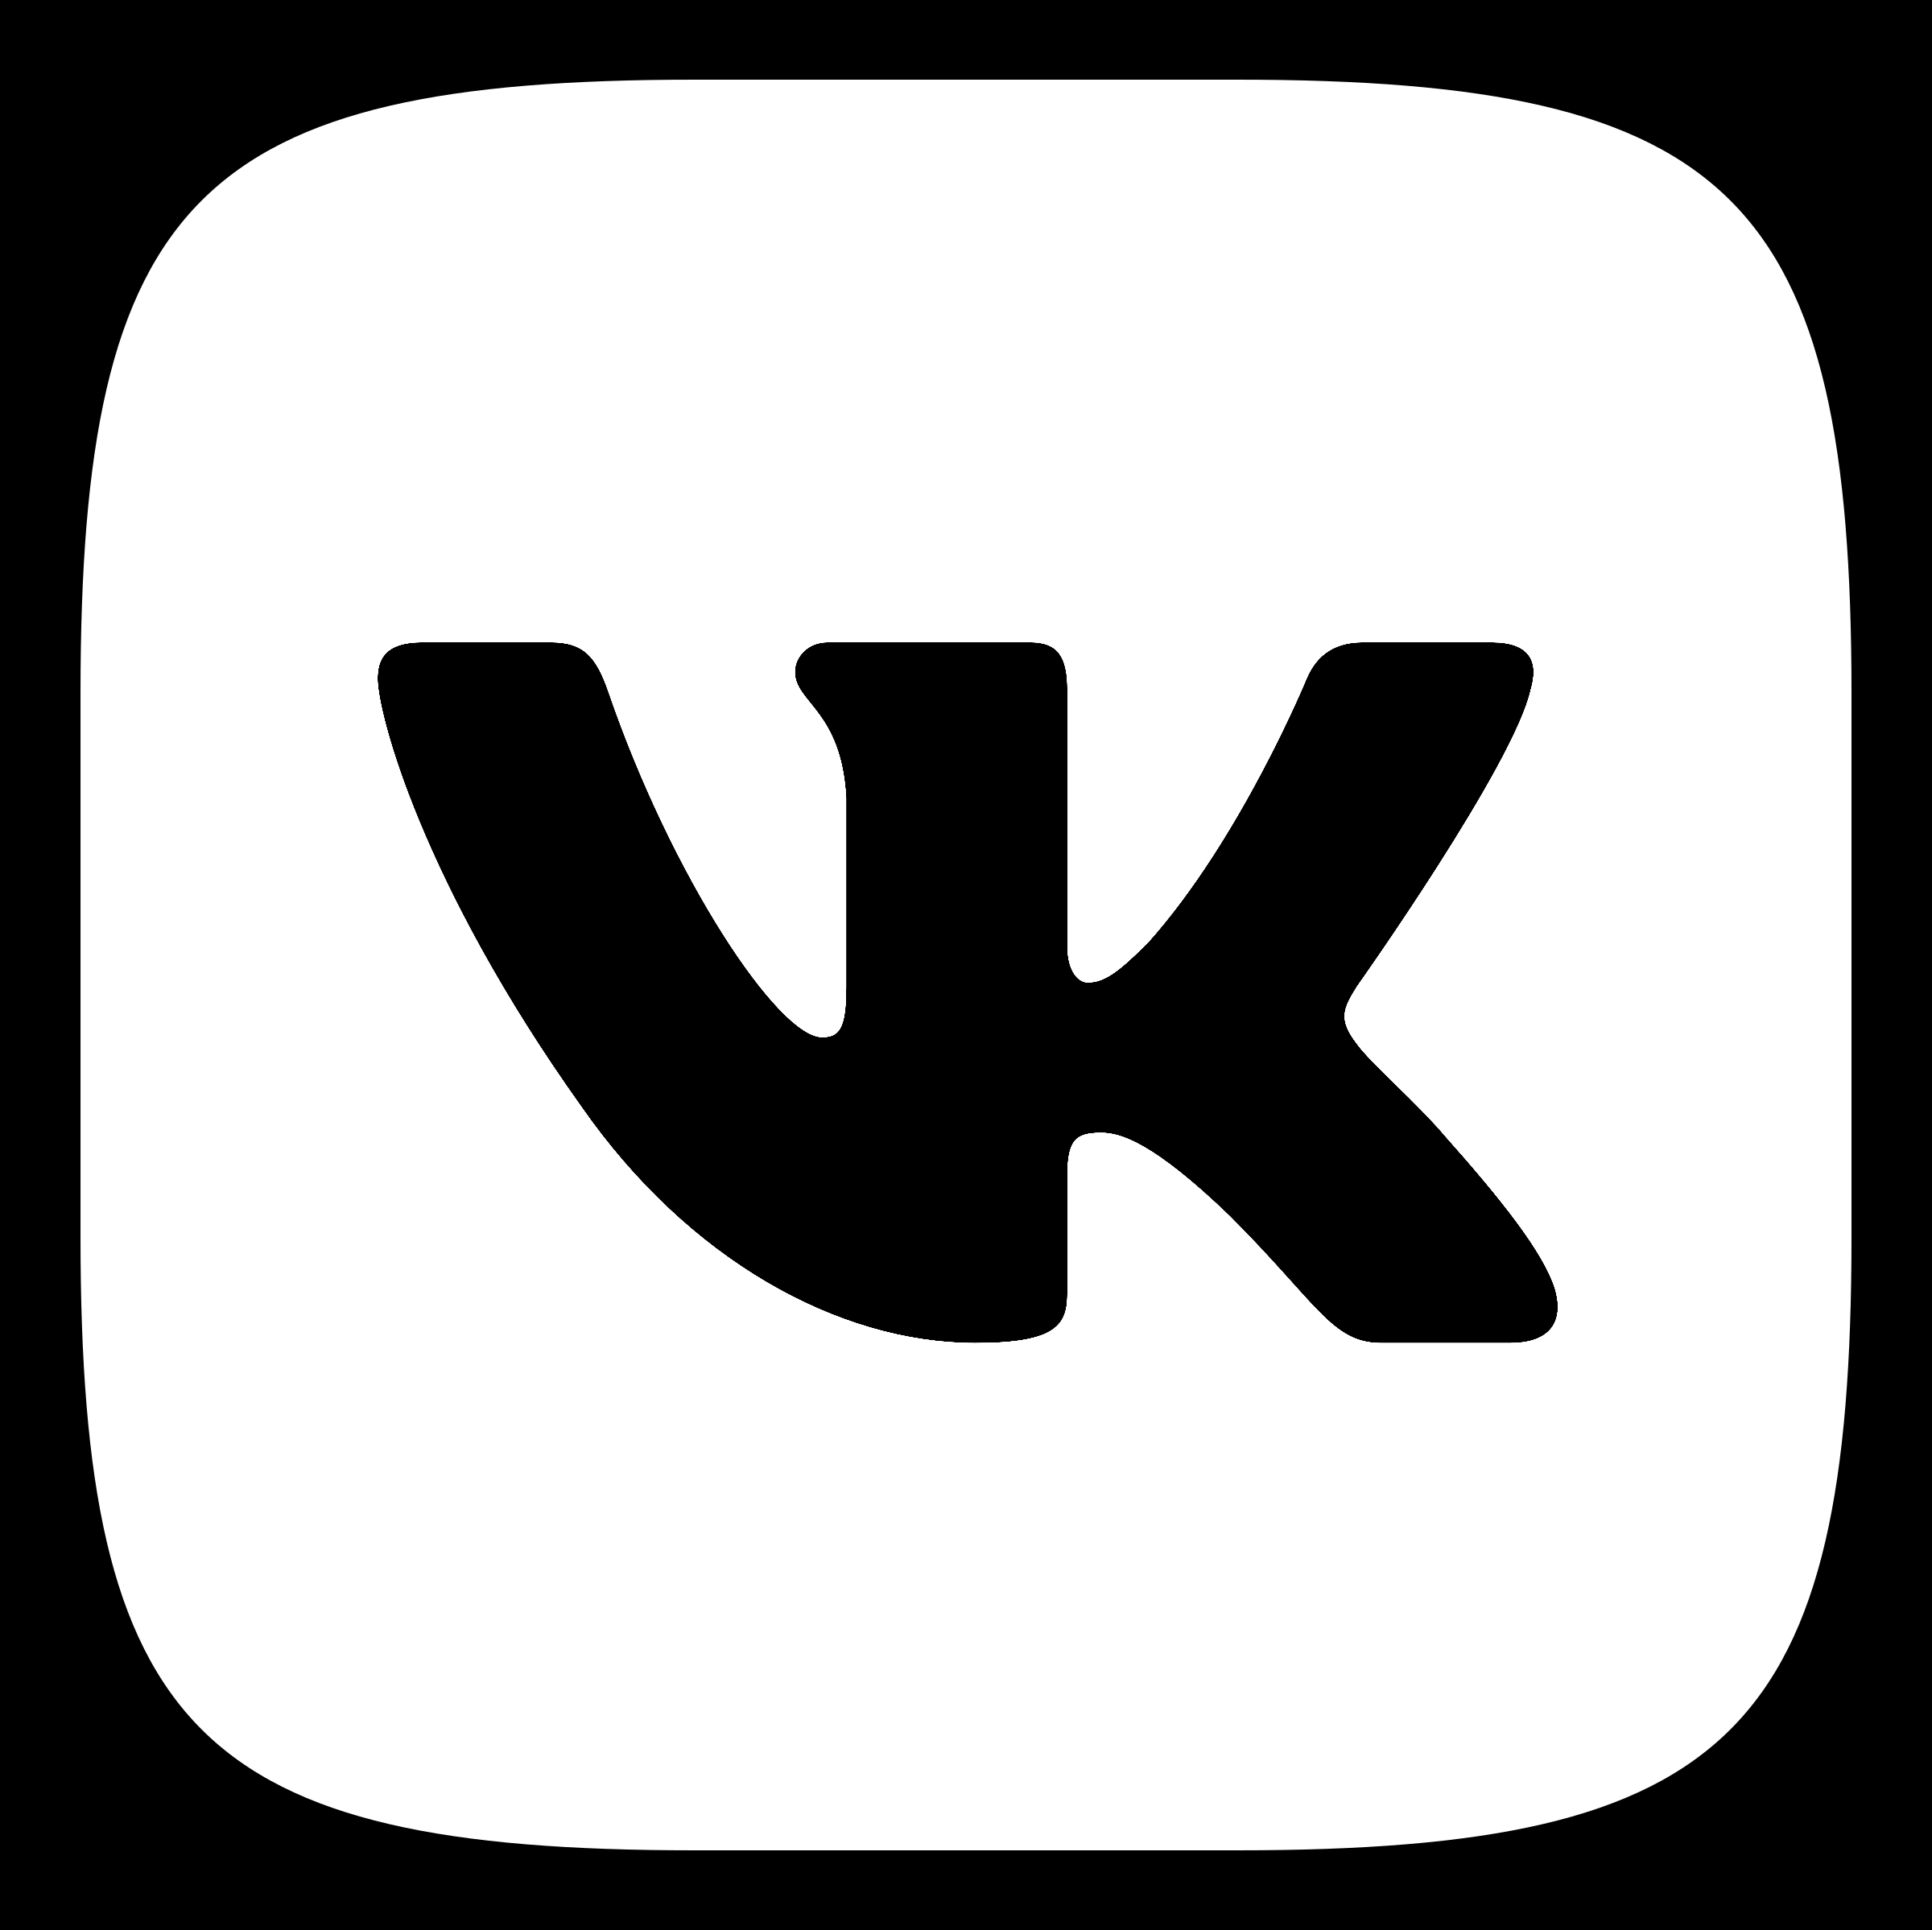 VK Logo - VK Logo PNG Transparent & SVG Vector